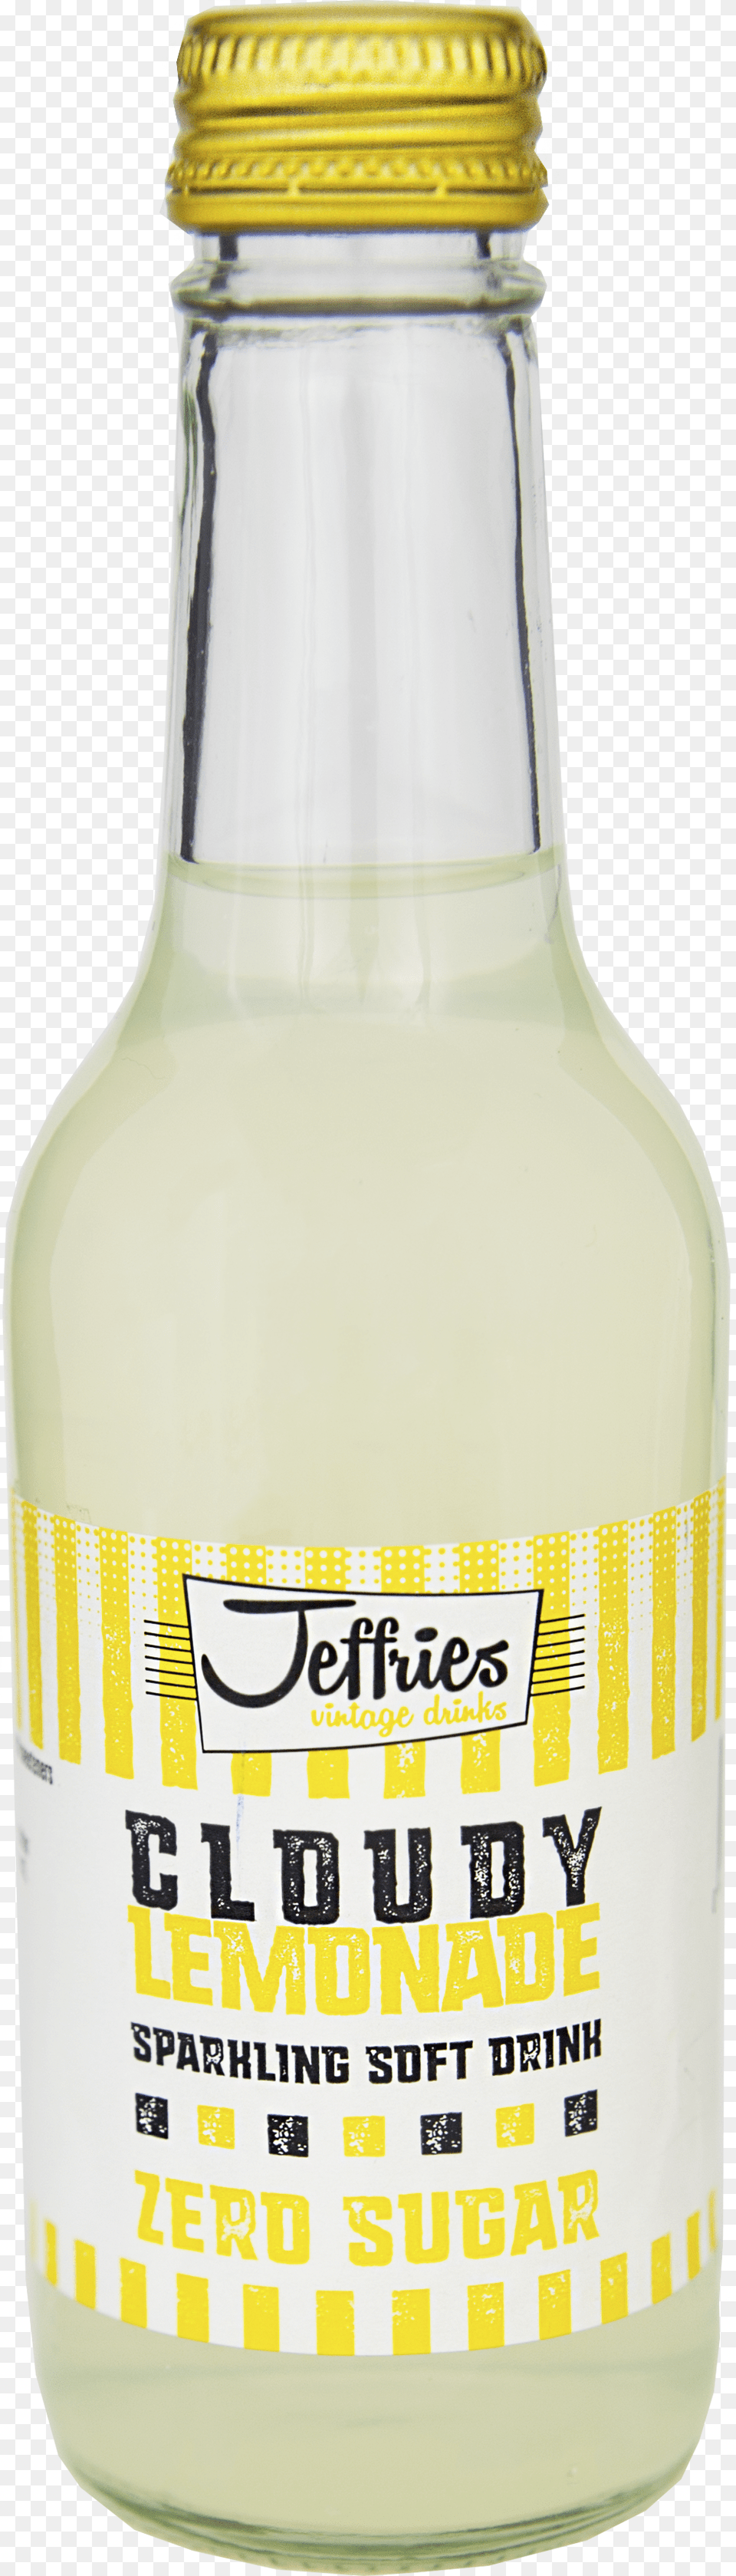 Glass Bottle, Beverage, Lemonade, Milk Png Image